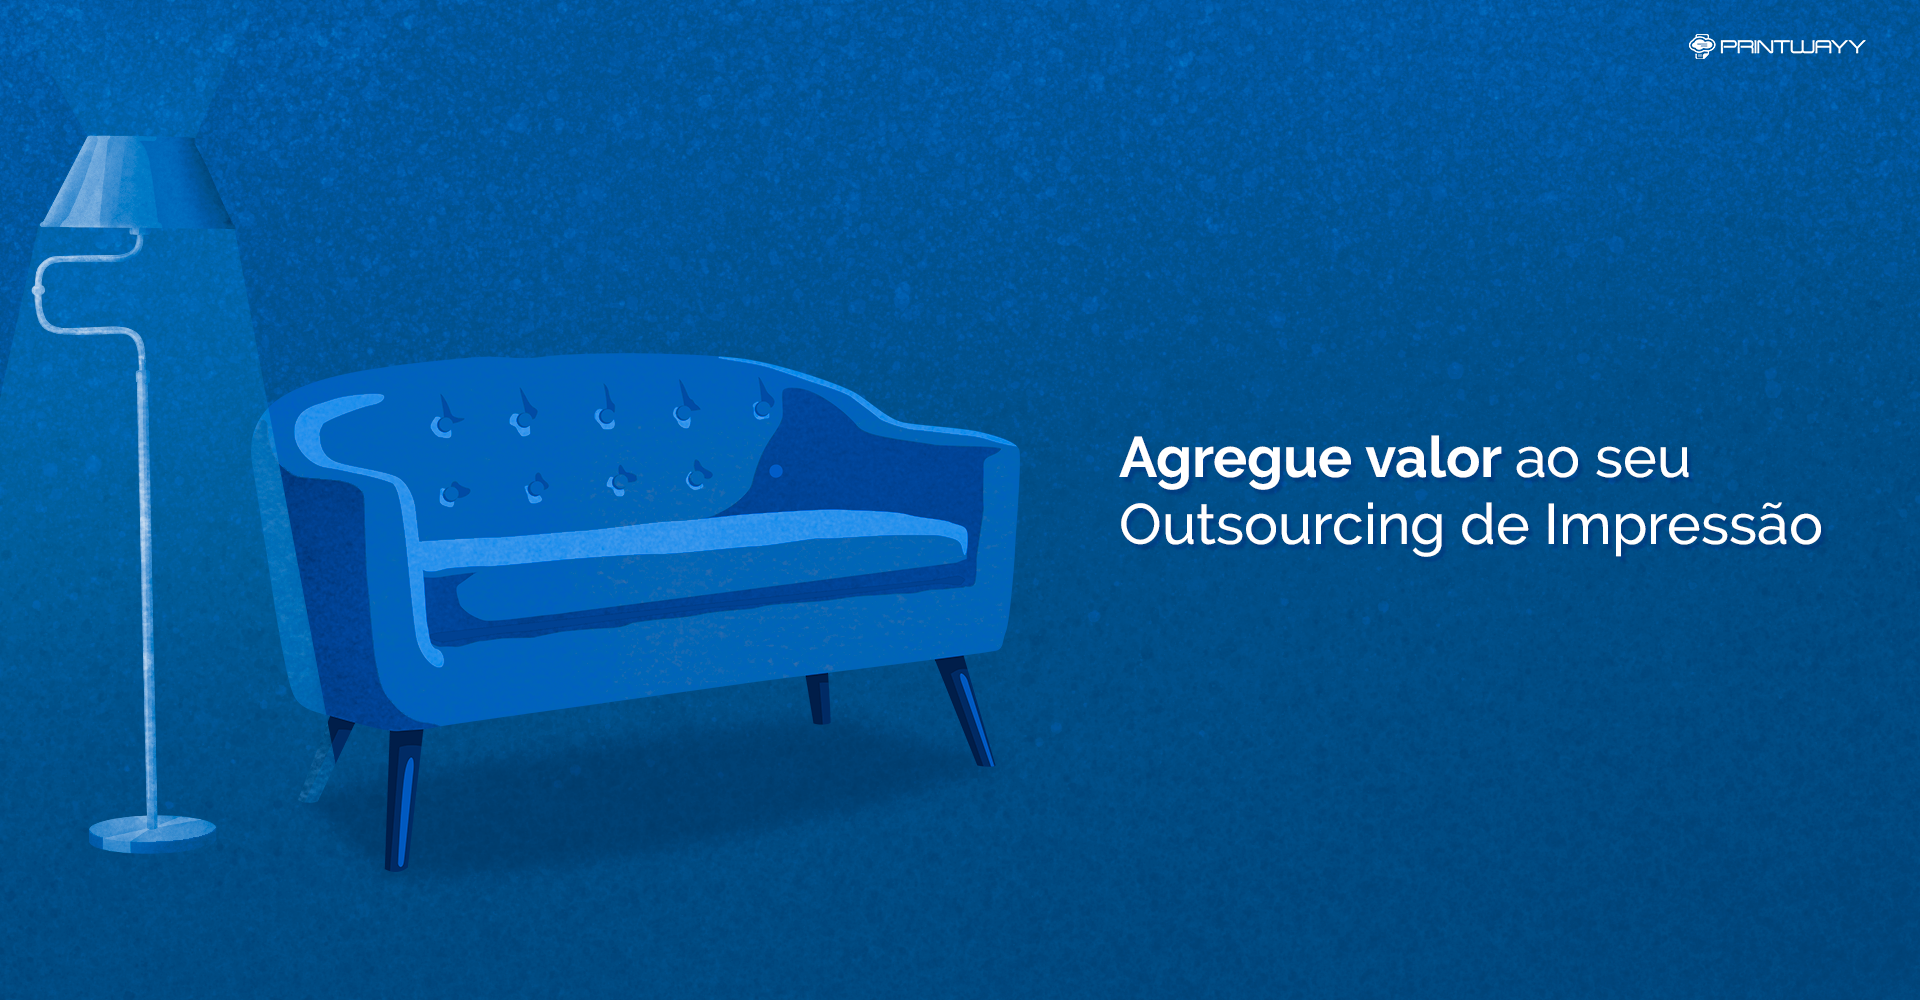 Imagem de um sofá e um abajur. Ela representa o valor que deve ser agregado na venda de outsourcing de impressão.